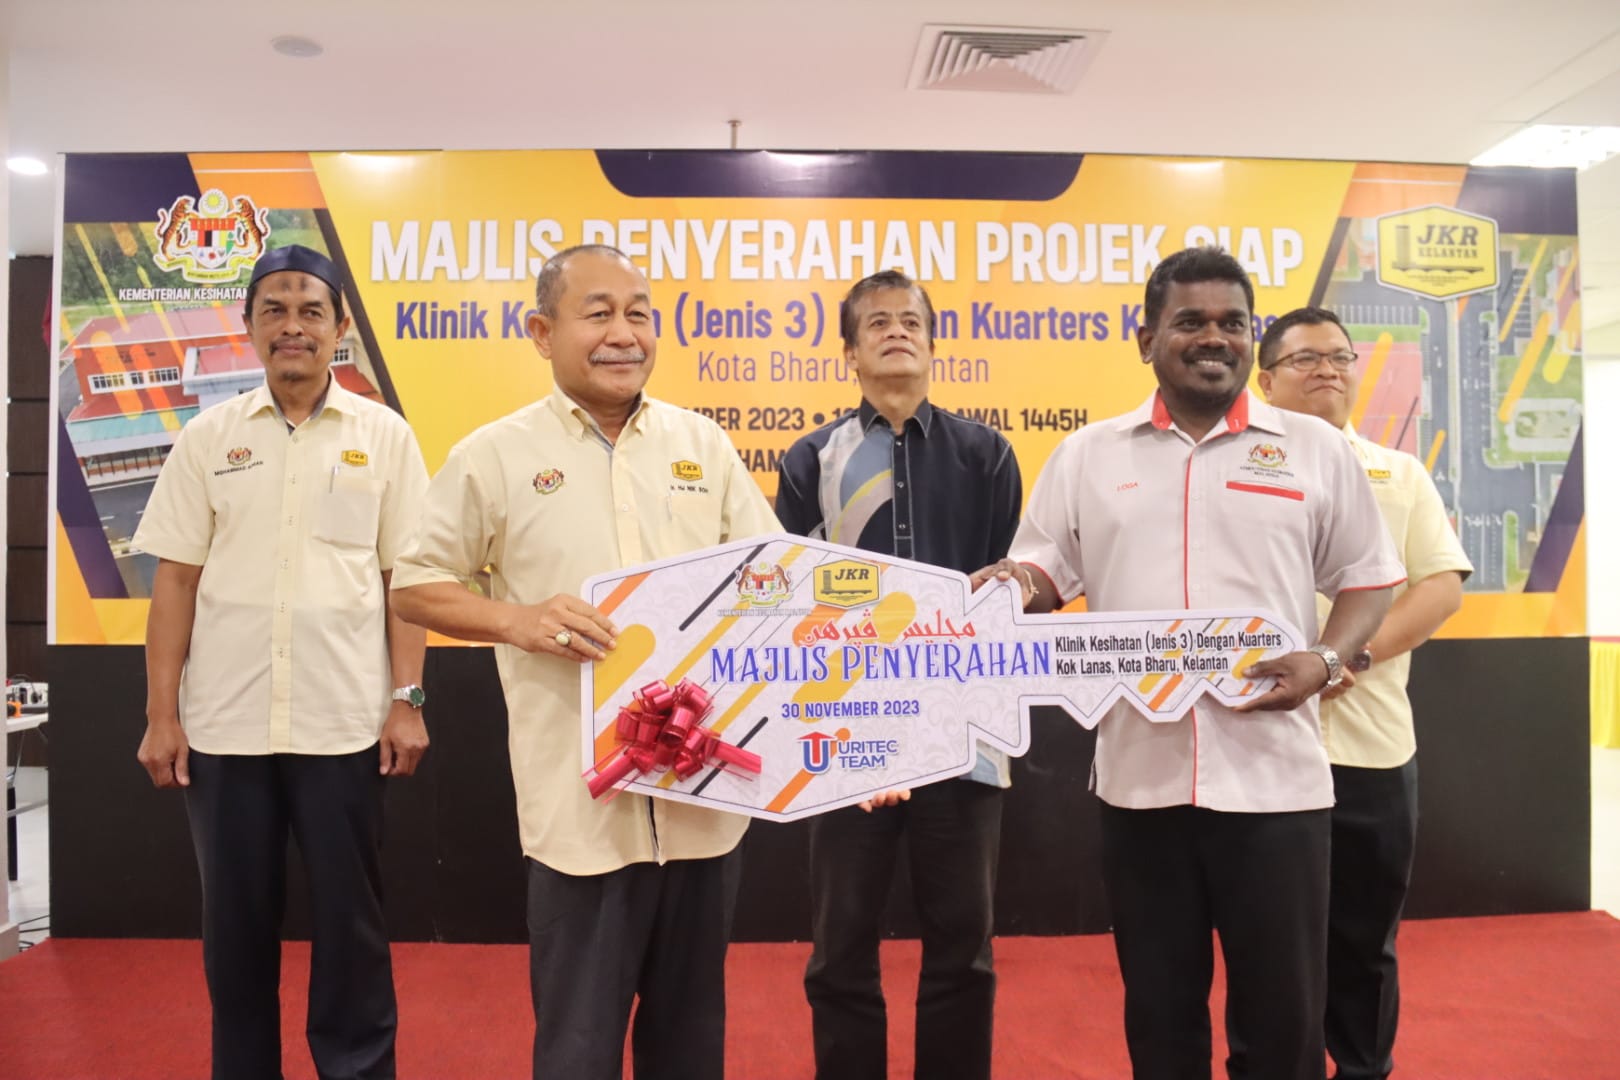 Majlis Penyerahan Projek Pembinaan Bangunan Klinik Kesihatan (Jenis 3) Dengan Kuarters Kok Lanas, Kota Bharu, Kelantan